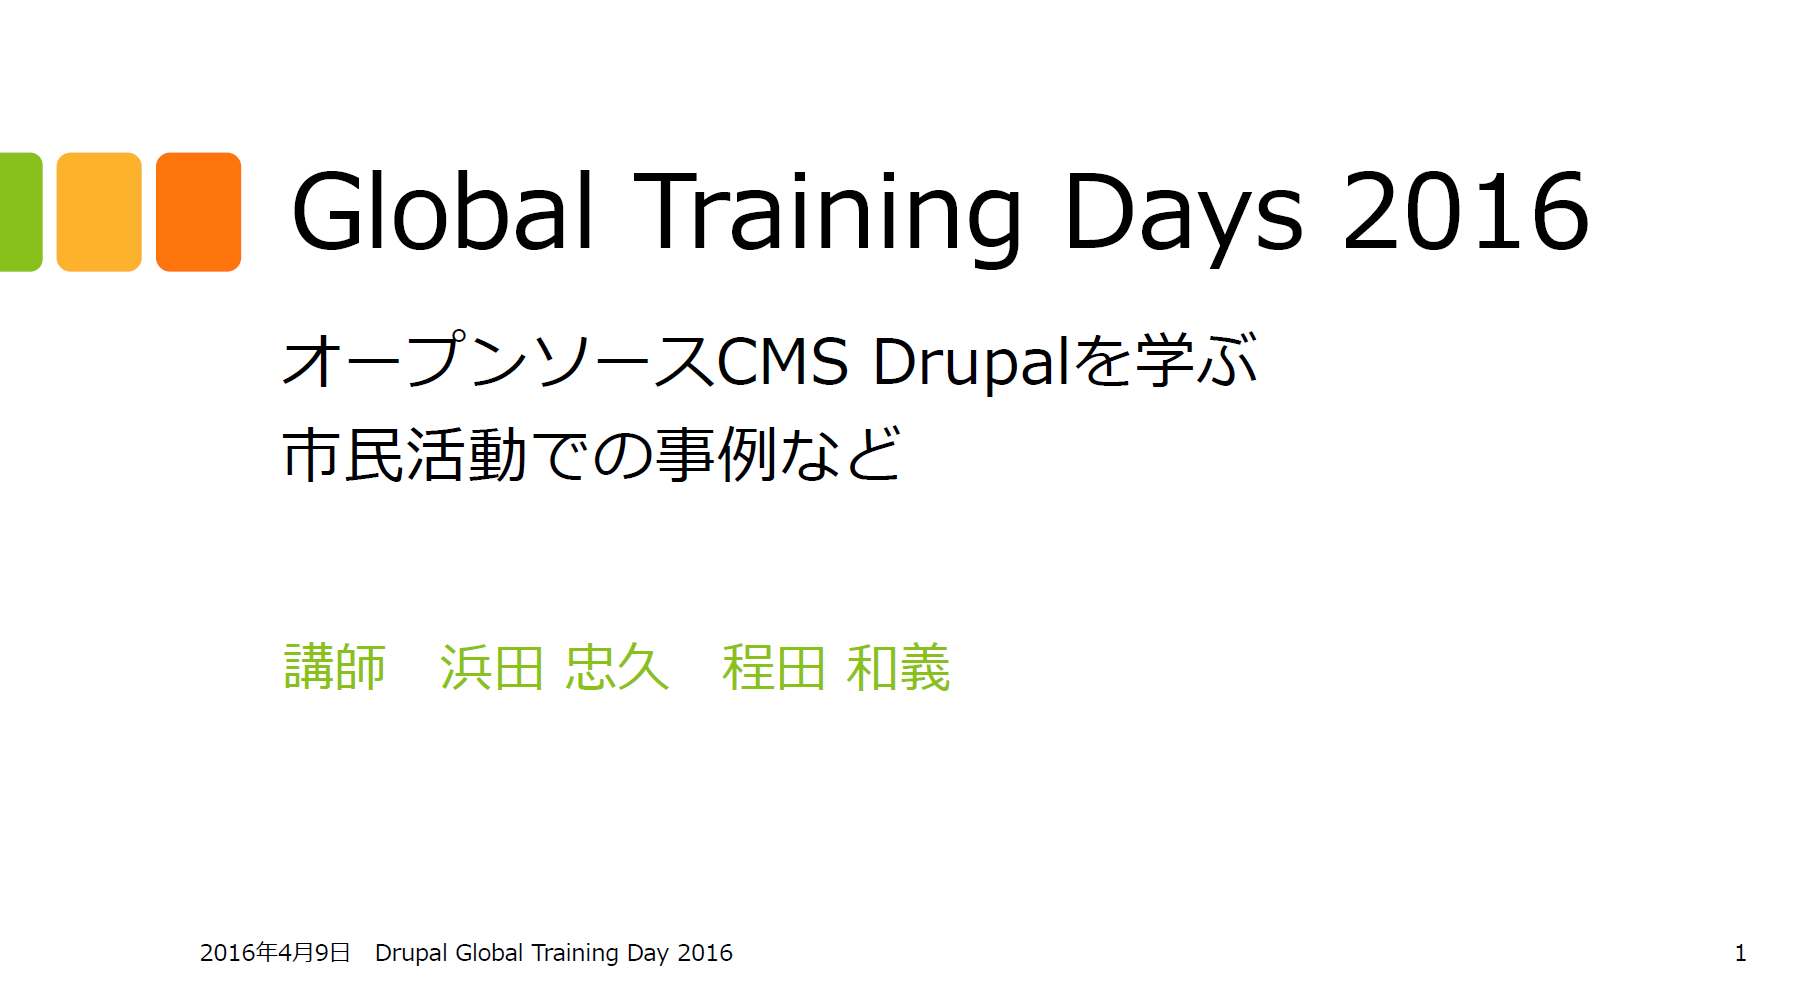 Drupal Global Training Day April 9, 2016